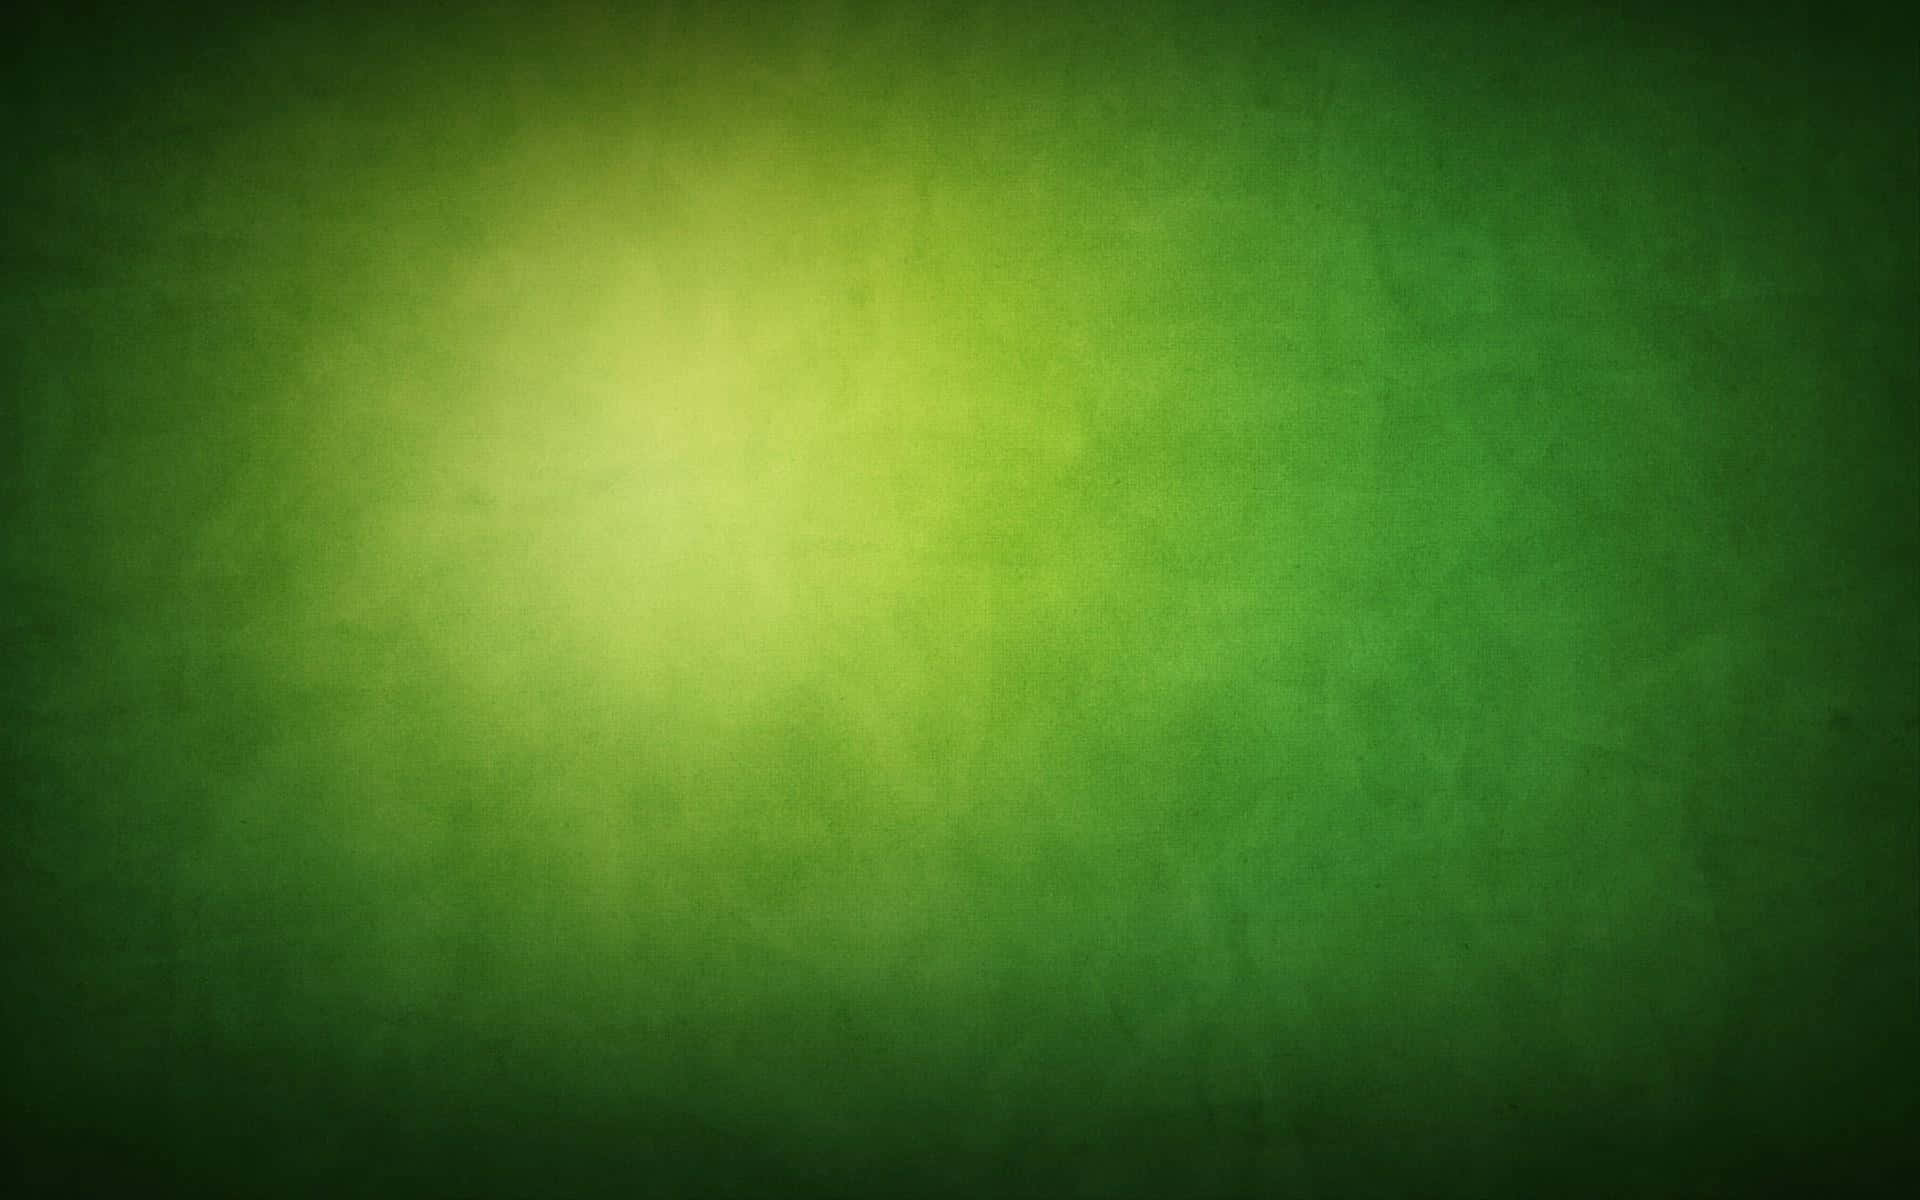 Bildgrüner Hintergrund